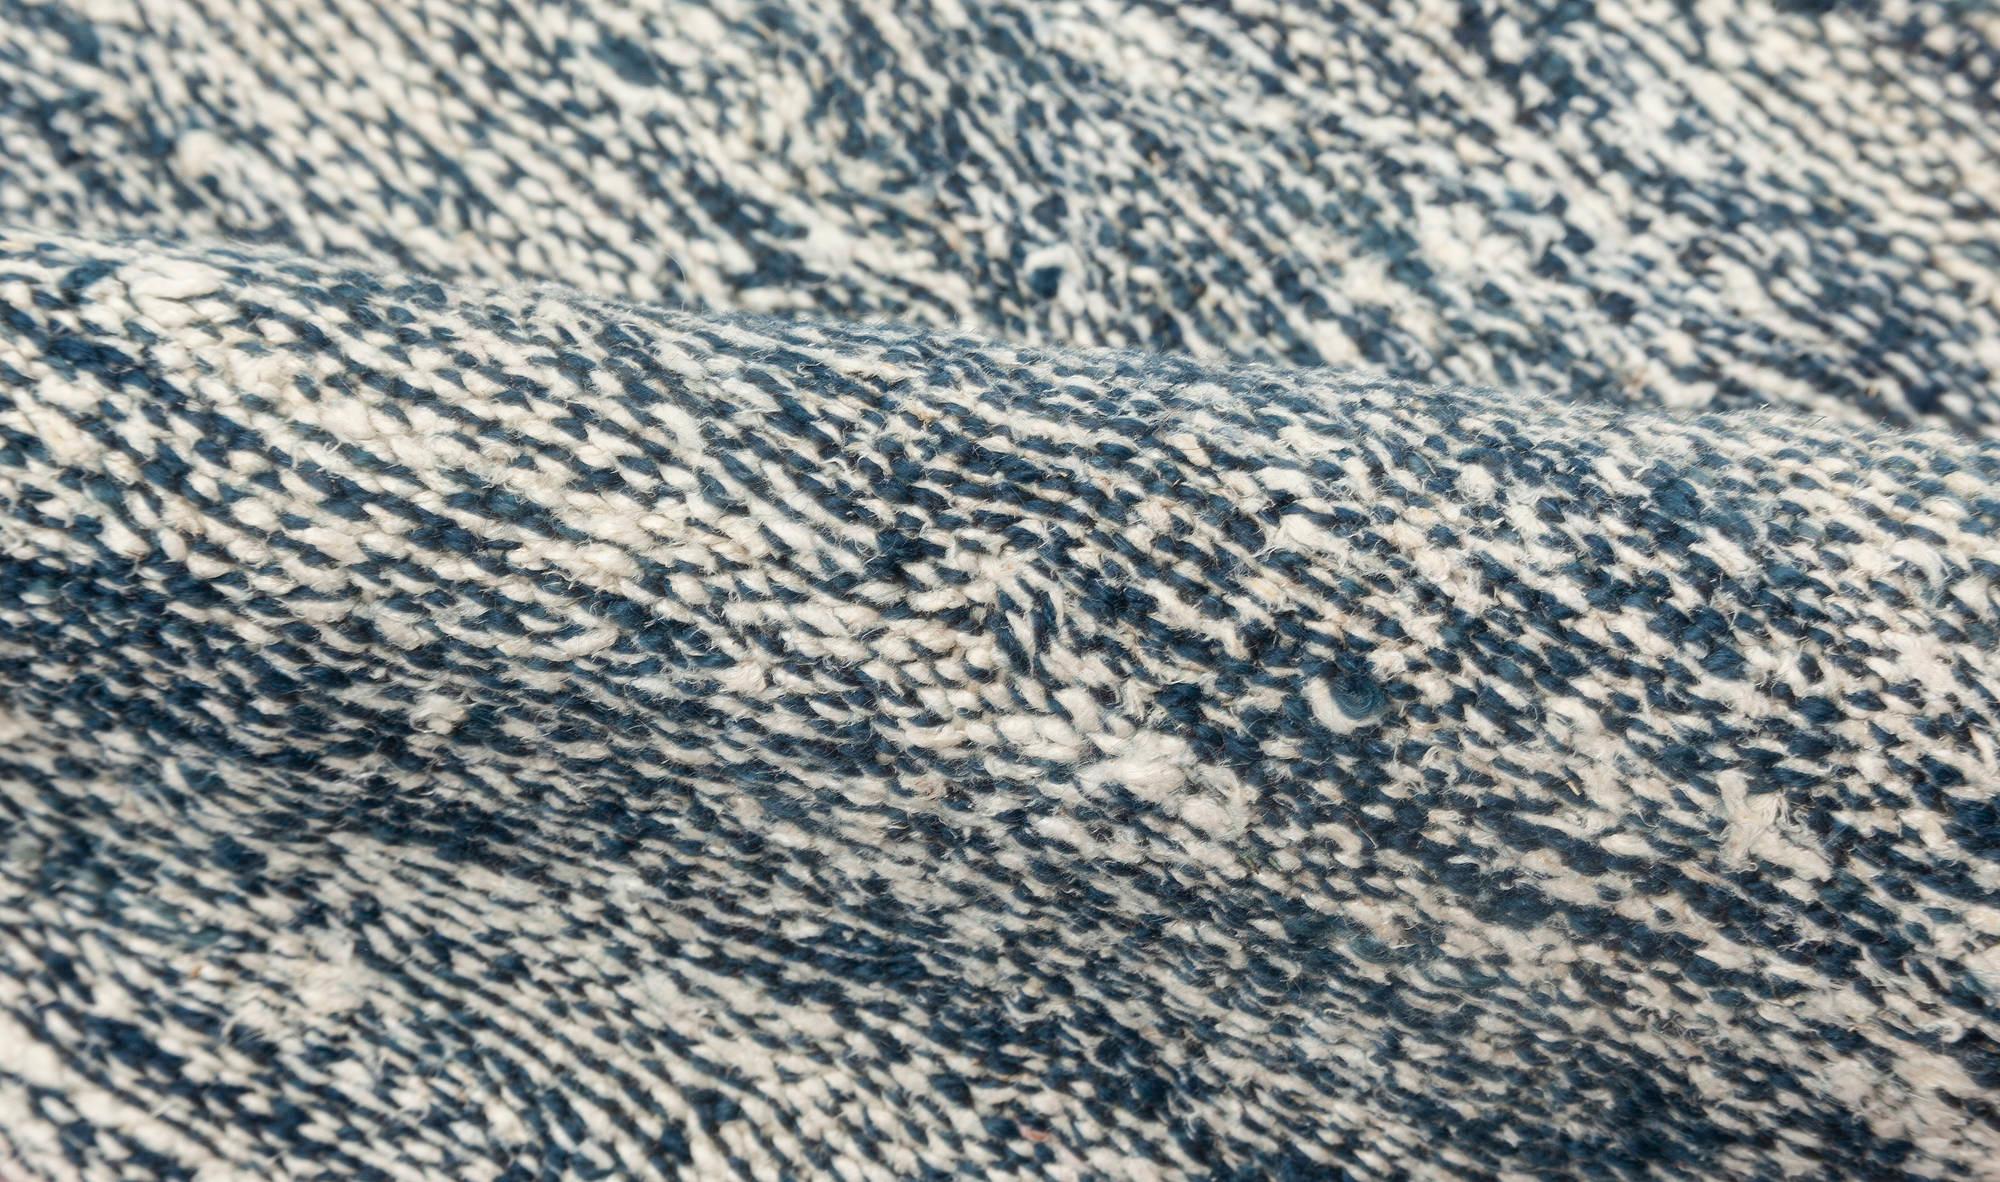 Zeitgenössischer blau-weißer Flachgewebeteppich aus Wolle von Doris Leslie Blau.
Größe: 12'10